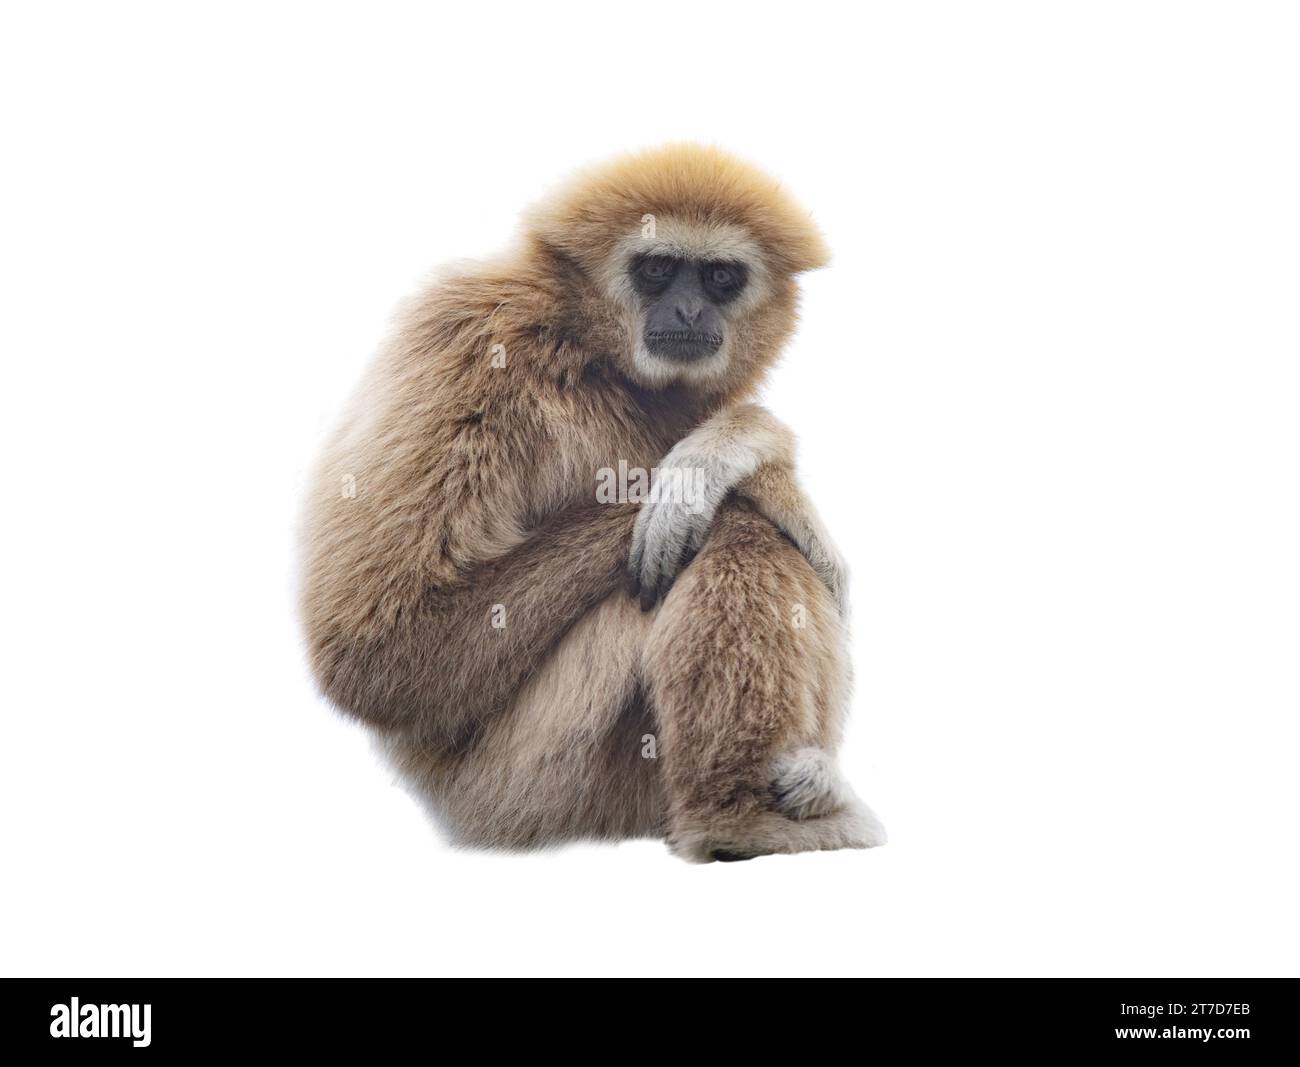 lar gibbon isolated on white background Stock Photo